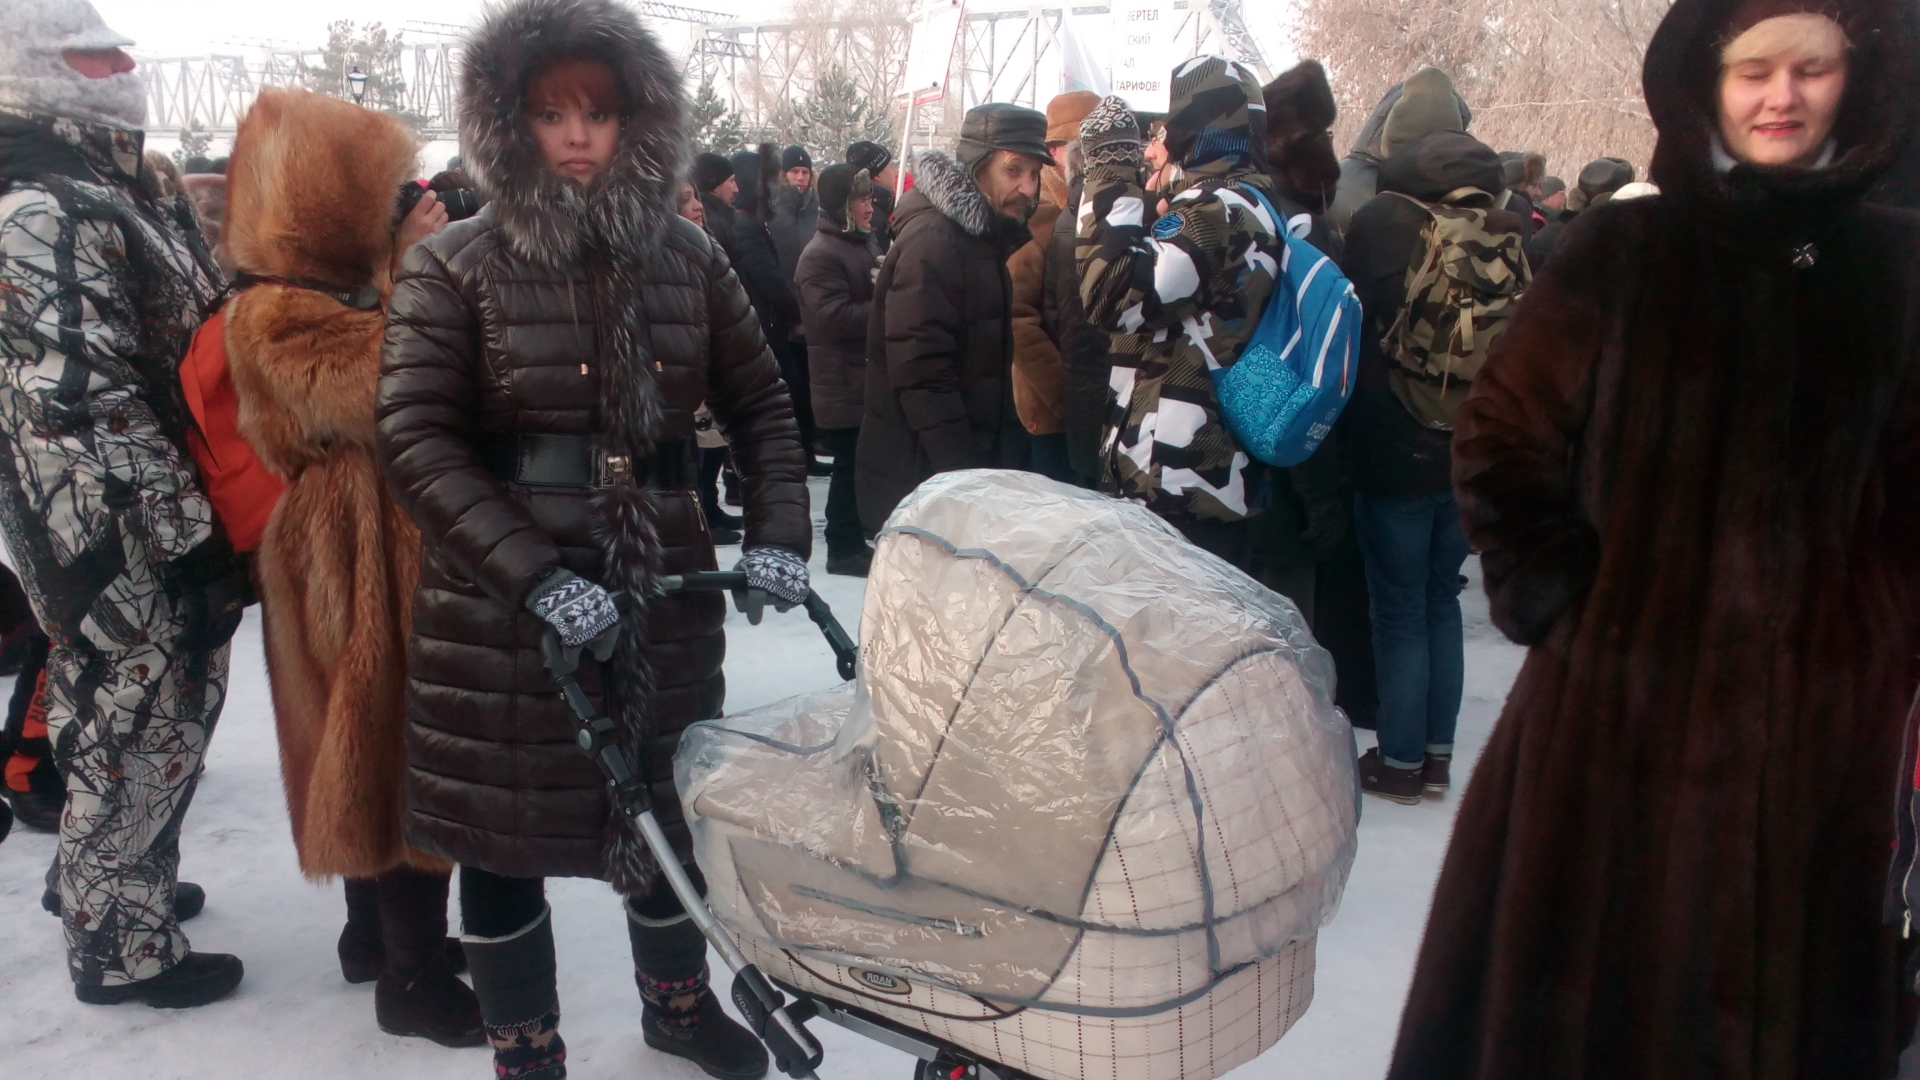  Анна Щербицкая пришла на акцию протеста с двухмесячным ребенком